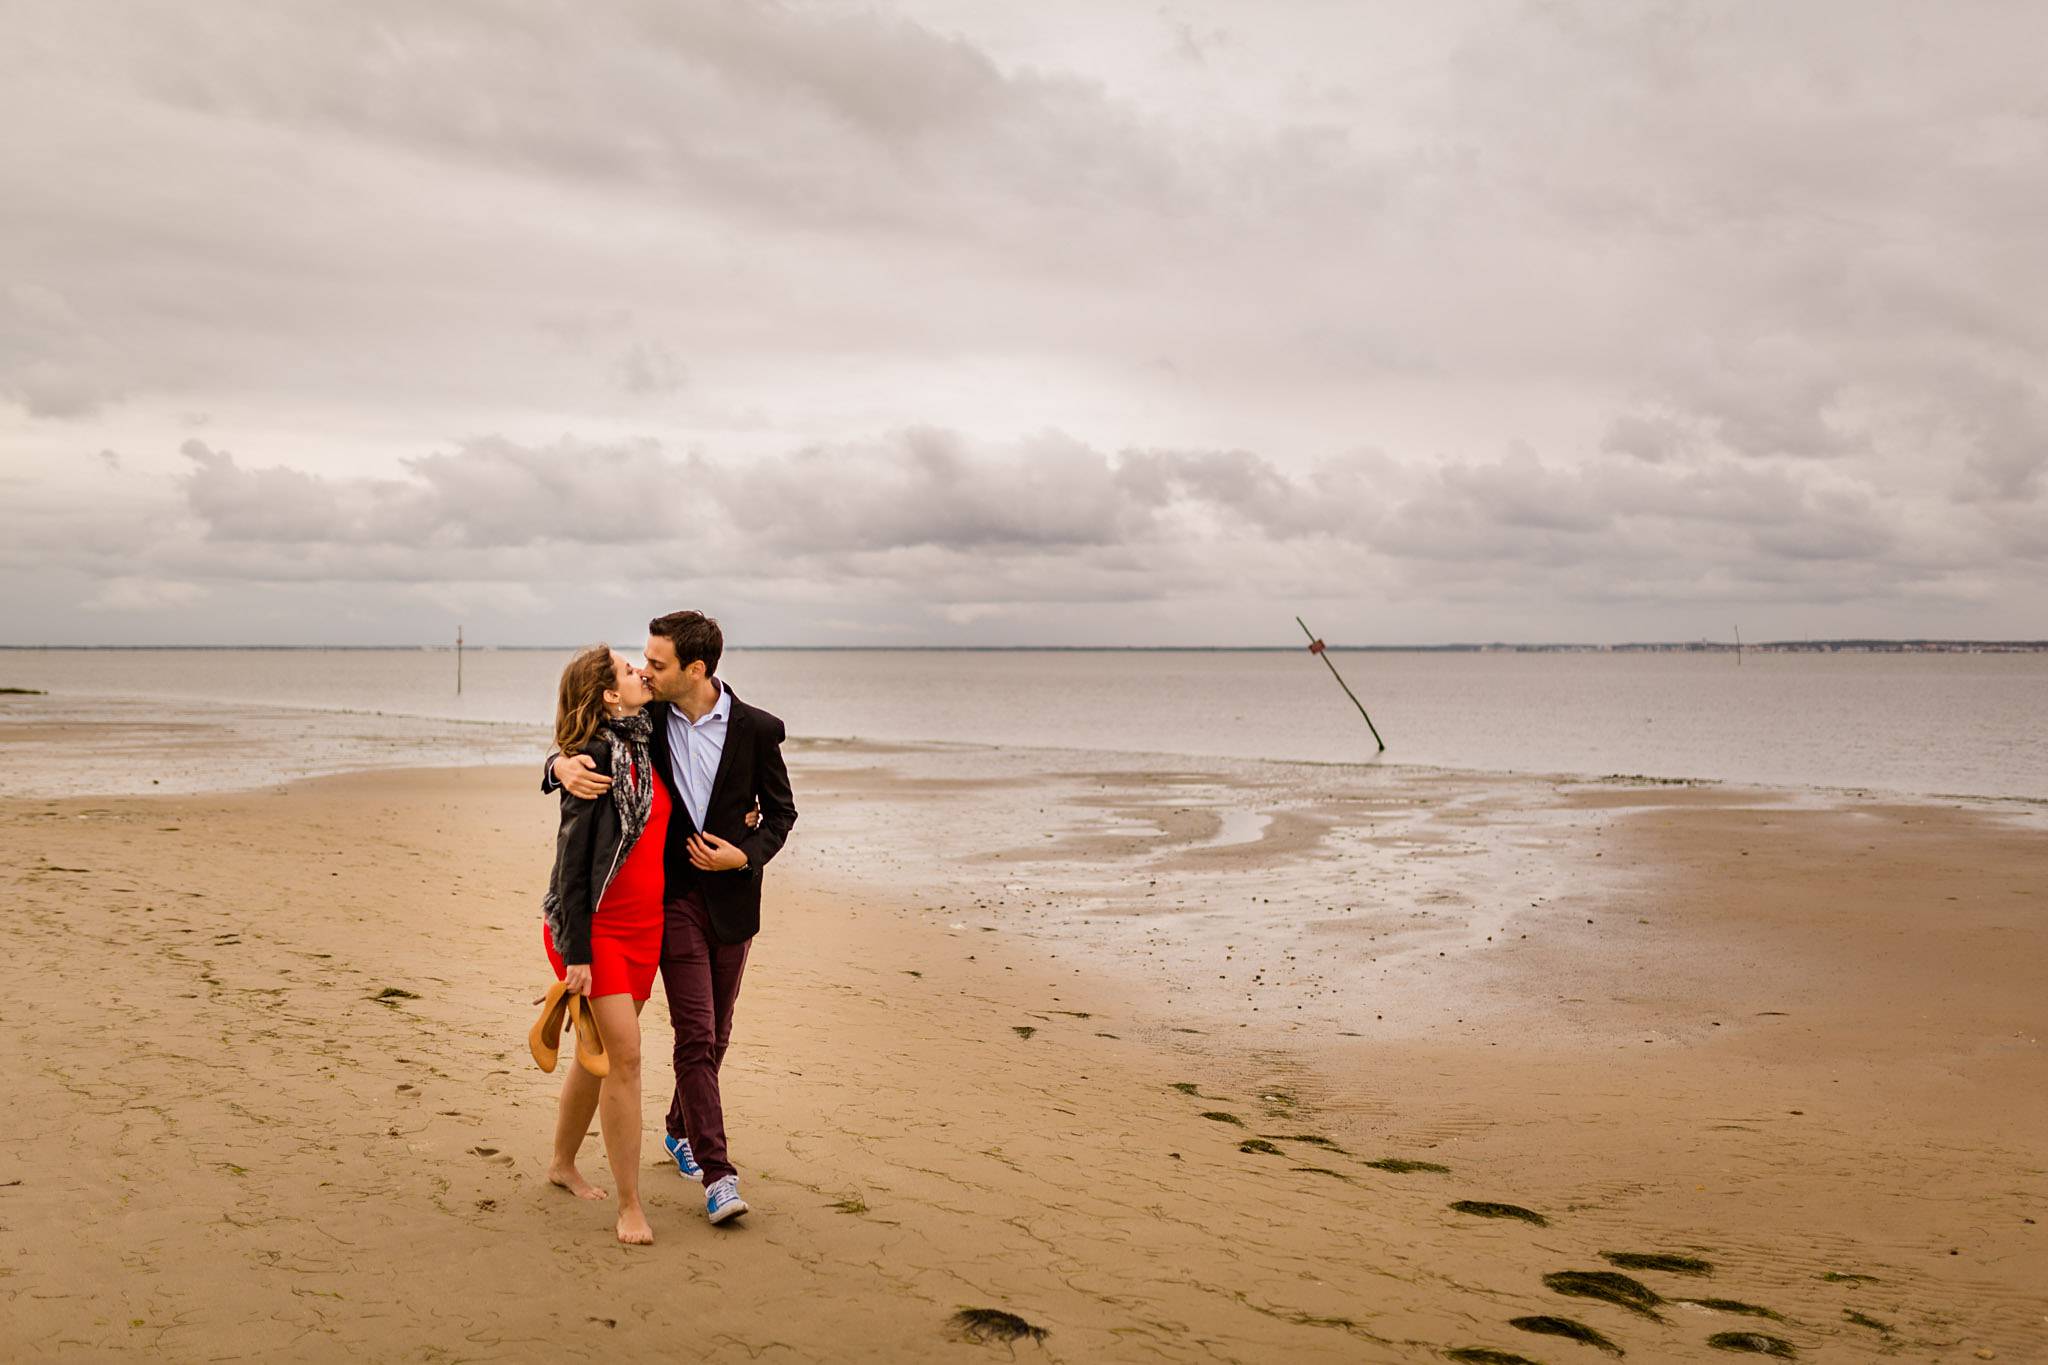 Les photos de la séance engagement à Andernos, dans la nature du bassin d'Arcachon en Gironde, de Valérie et Adrien, avant leur mariage en Dordogne en 2018. 